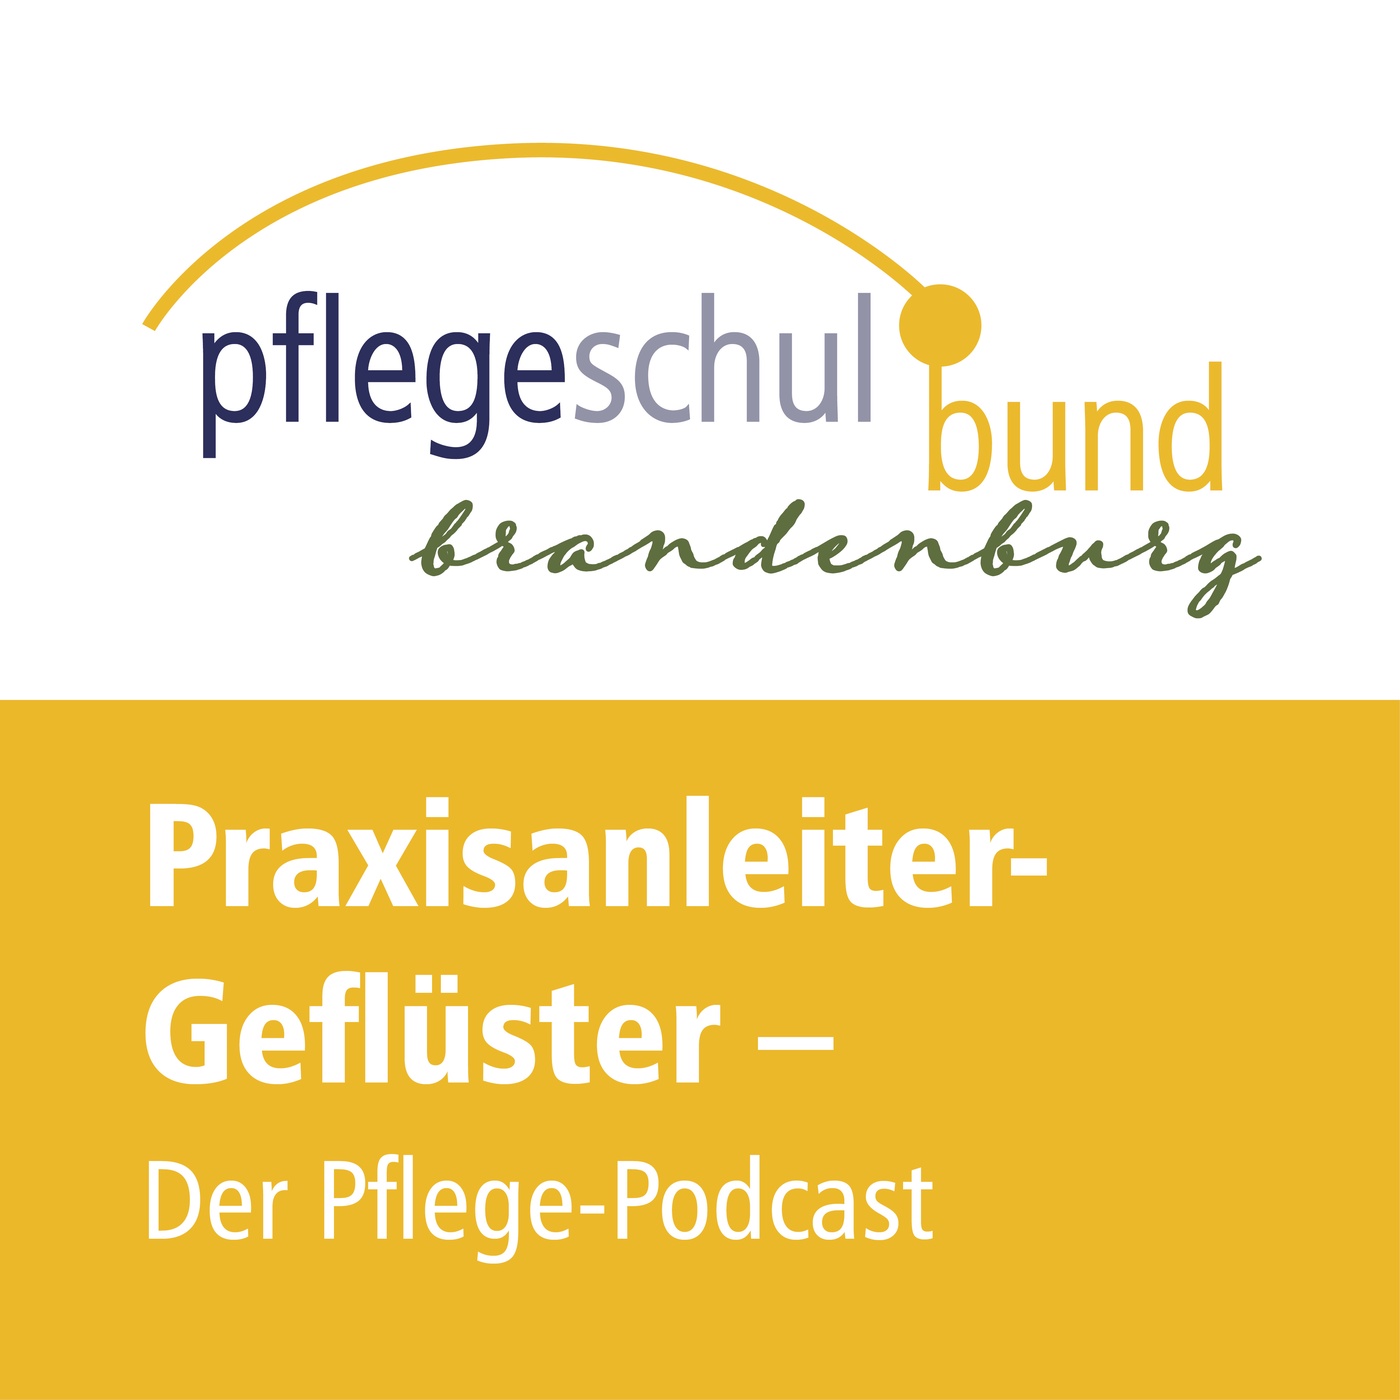 Praxisanleiter-Geflüster – Der Pflege-Podcast